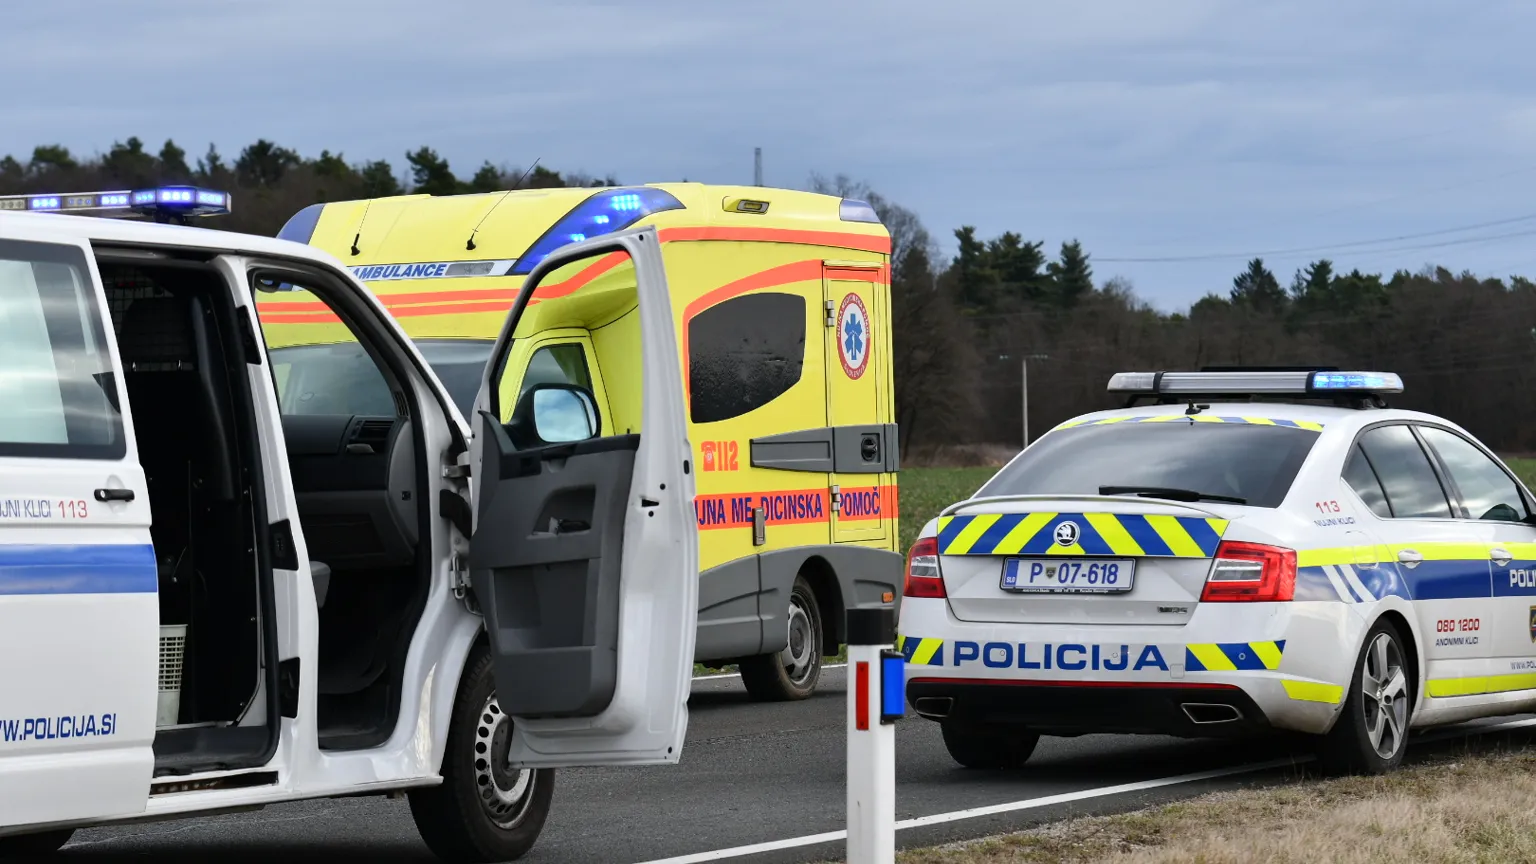 Trojno trčenje: 63-letni motorist iz okolice Maribora hudo poškodovan